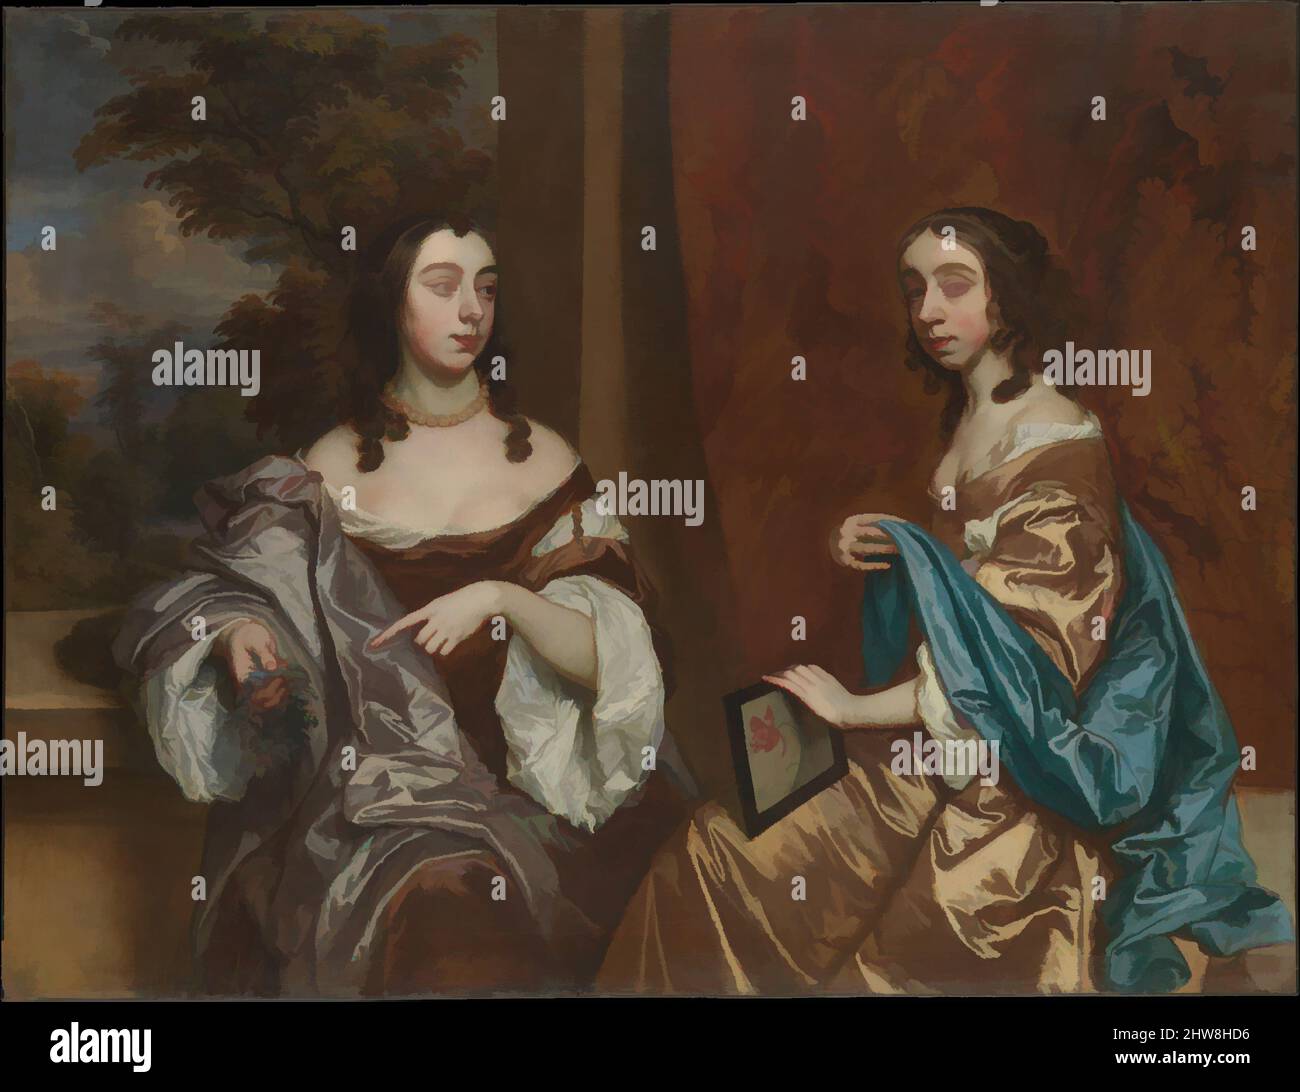 Kunst inspiriert von Mary Capel (1630–1715), später Herzogin von Beaufort, und ihrer Schwester Elizabeth (1633–1678), Gräfin von Carnarvon, Öl auf Leinwand, 51 1/4 x 67 Zoll (130,2 x 170,2 cm), Gemälde, Sir Peter Lely (Pieter van der Faes) (Britisch, Soest 1618–1680 London), Lely wurde beeinflusst von klassischen Werken, die von Artotop mit einem Schuss Moderne modernisiert wurden. Formen, Farbe und Wert, auffällige visuelle Wirkung auf Kunst. Emotionen durch Freiheit von Kunstwerken auf zeitgemäße Weise. Eine zeitlose Botschaft, die eine wild kreative neue Richtung verfolgt. Künstler, die sich dem digitalen Medium zuwenden und die Artotop NFT erschaffen Stockfoto